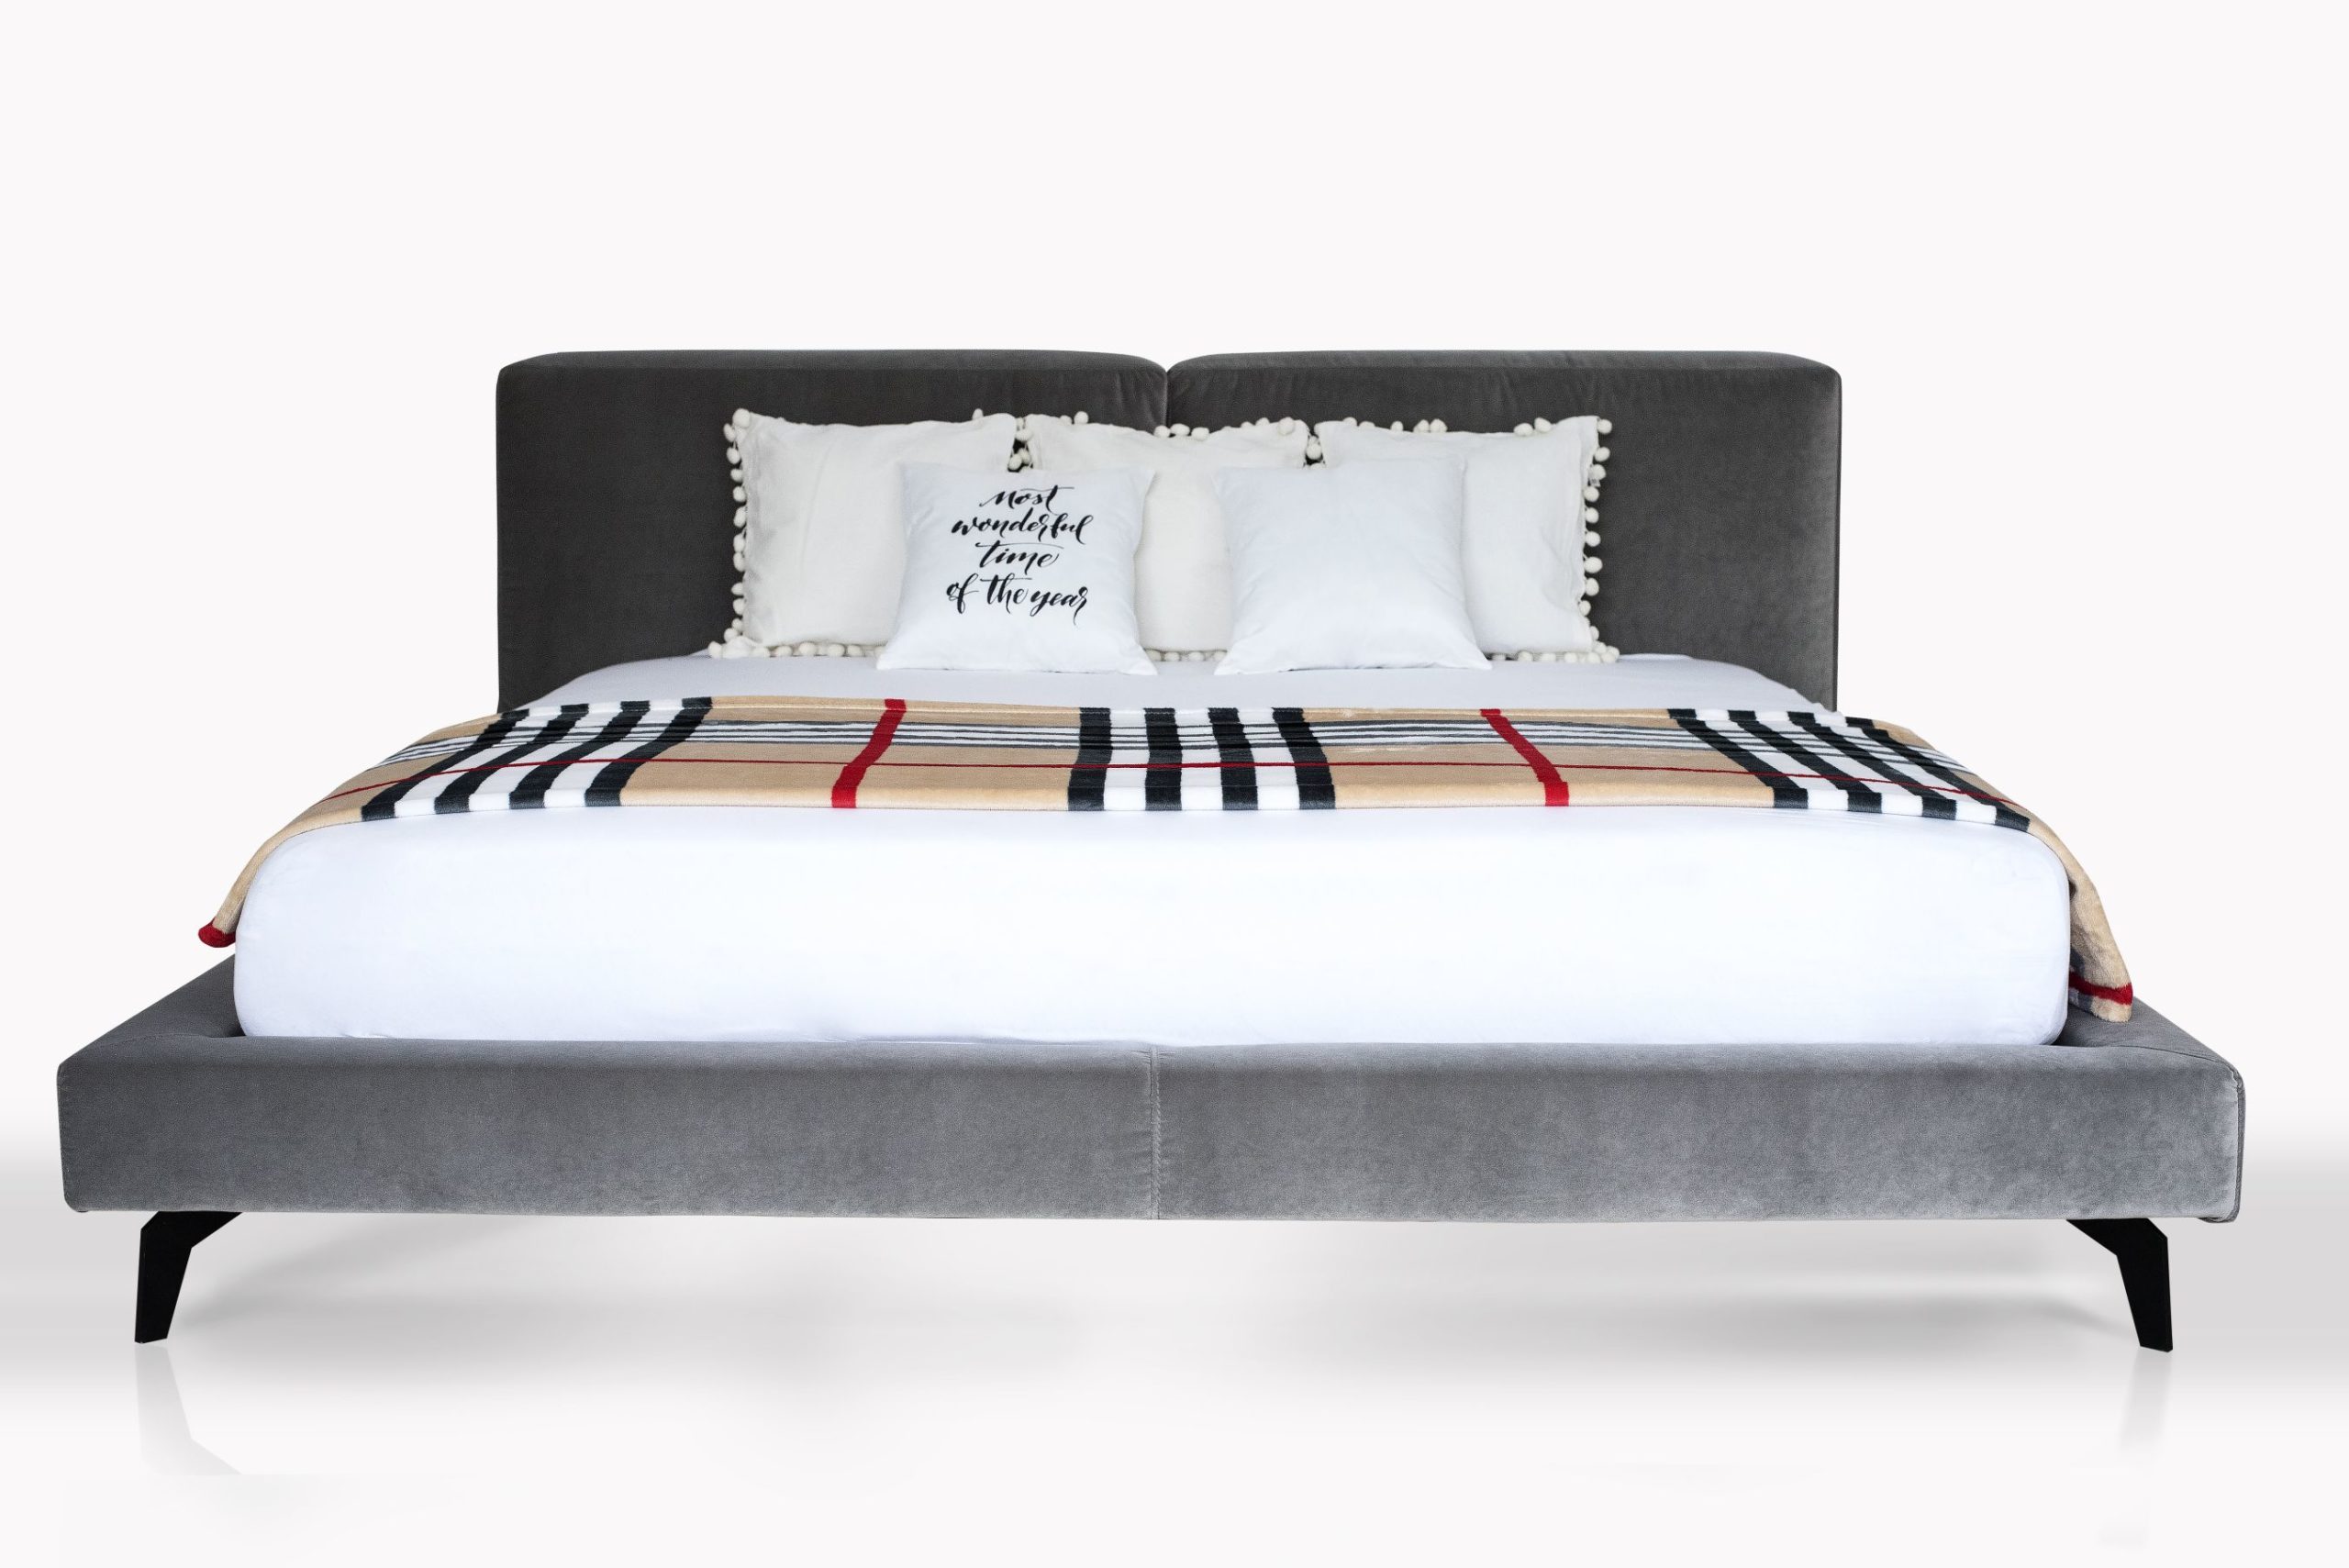 Łóżko Nico marki Rosanero – maksymalny komfort w minimalistycznym wydaniu , Rosanero,łóżko Nico - Wygodne łóżko, pozwalające na regenerację i niczym niezmącony sen, stanowi obowiązkowy element każdej sypialni. Co więcej, jest ono również częścią naszego życia, ponieważ to właśnie w nim spędzamy średnio 8 godzin na dobę. Idealny mebel powinien być zatem nie tylko elegancki, ale przede wszystkim ergonomiczny. Dokładnie taki, jak komfortowe i stylowe łóżko Nico marki Rosanero.